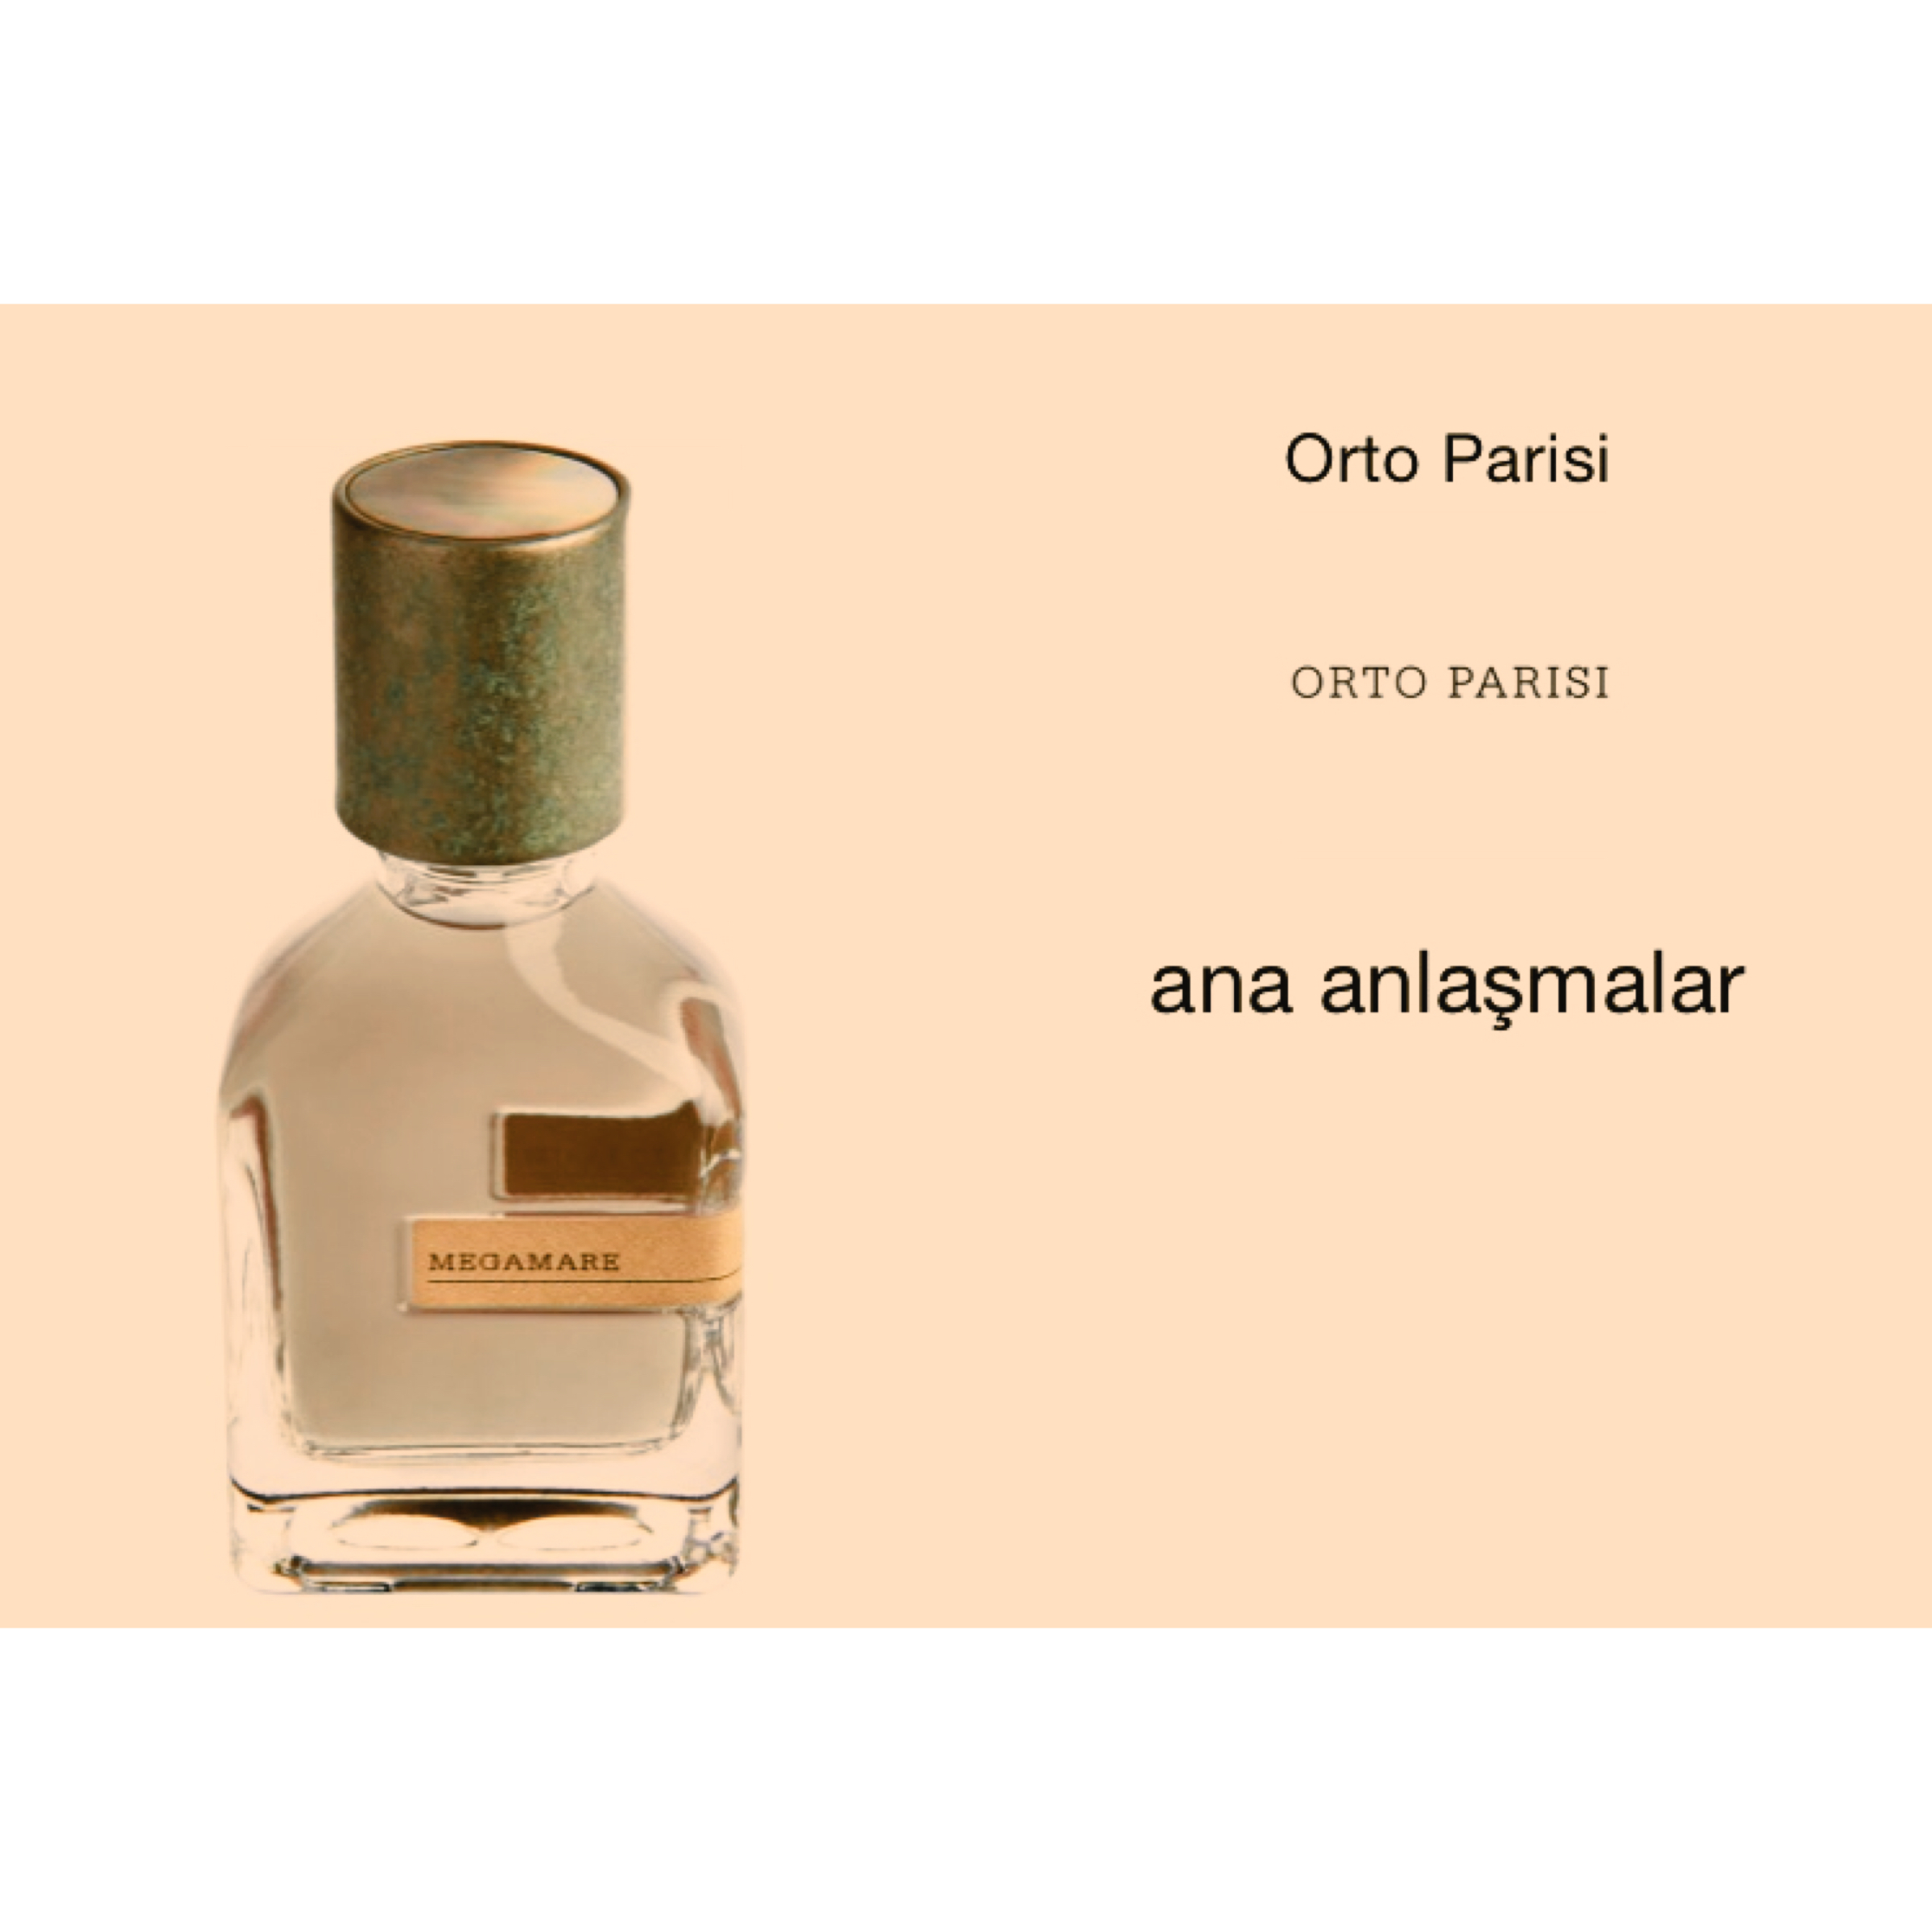 ORTO PARISI- MEGAMARE EAU DE PARFUM 50 ml (Tester) – JULIENNEPARFUM